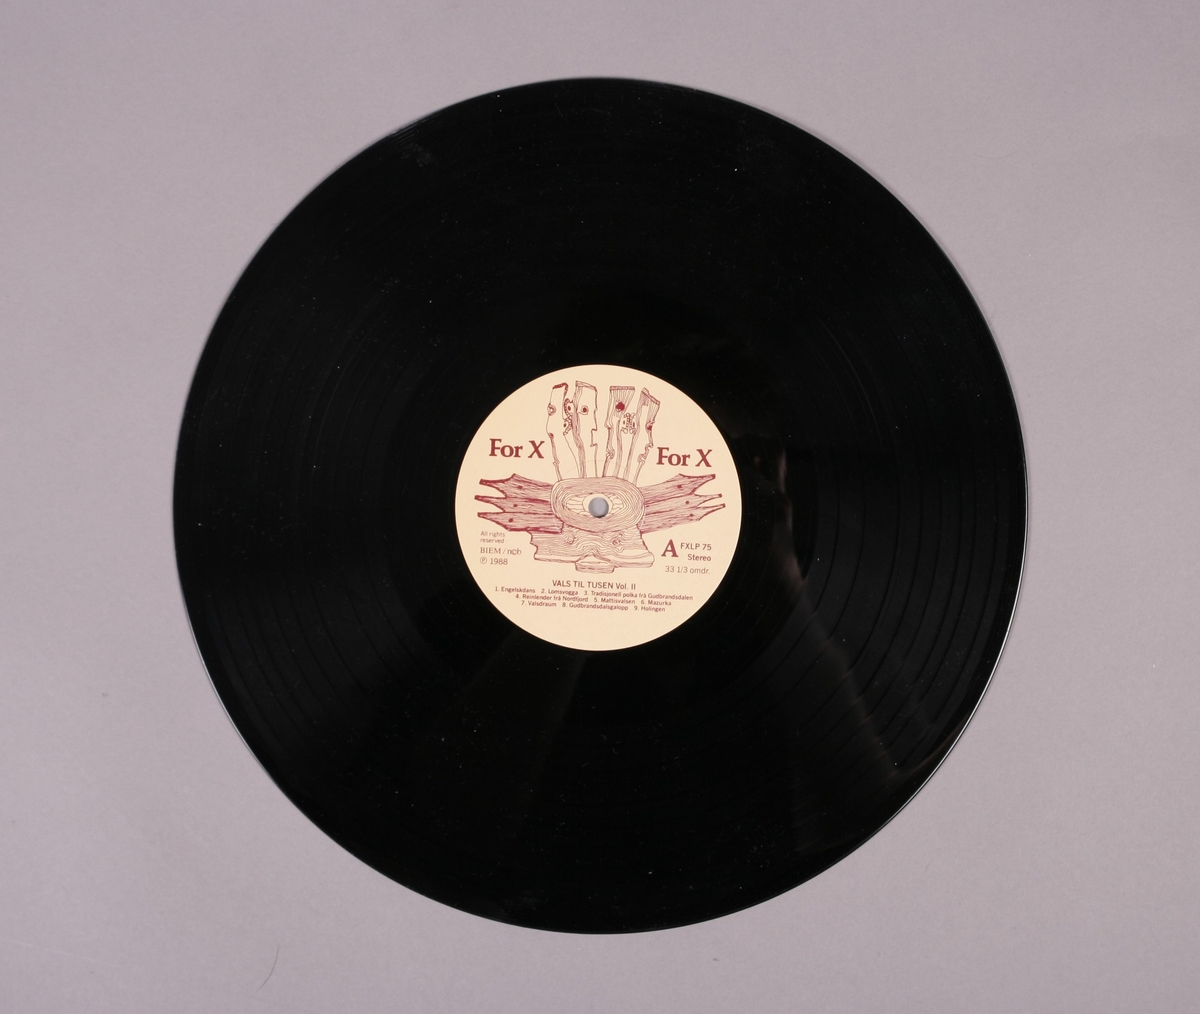 Grammofonplate i svart vinyl og plateomslag i papp. Volum II i en serie bestående av to plater. Plata ligger i en papirlomme.